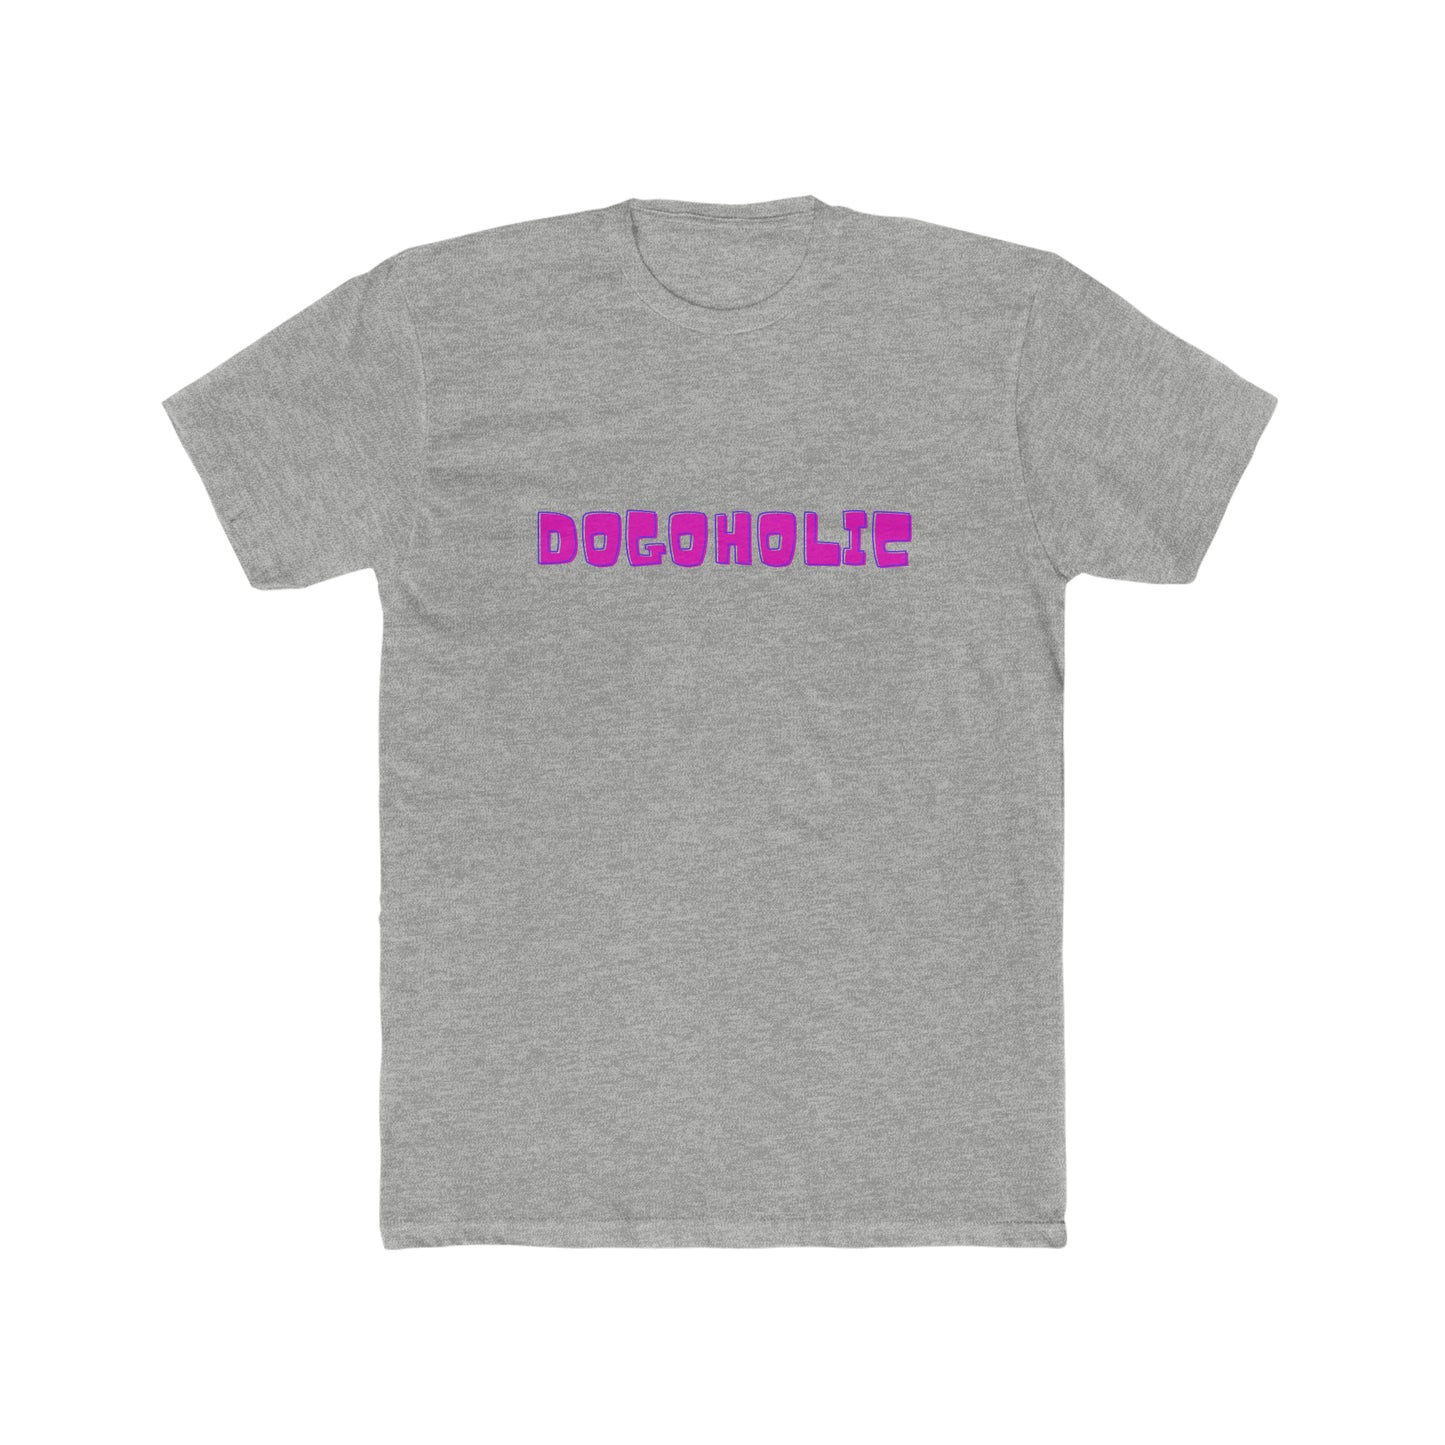 "Dogoholic" T-Shirt